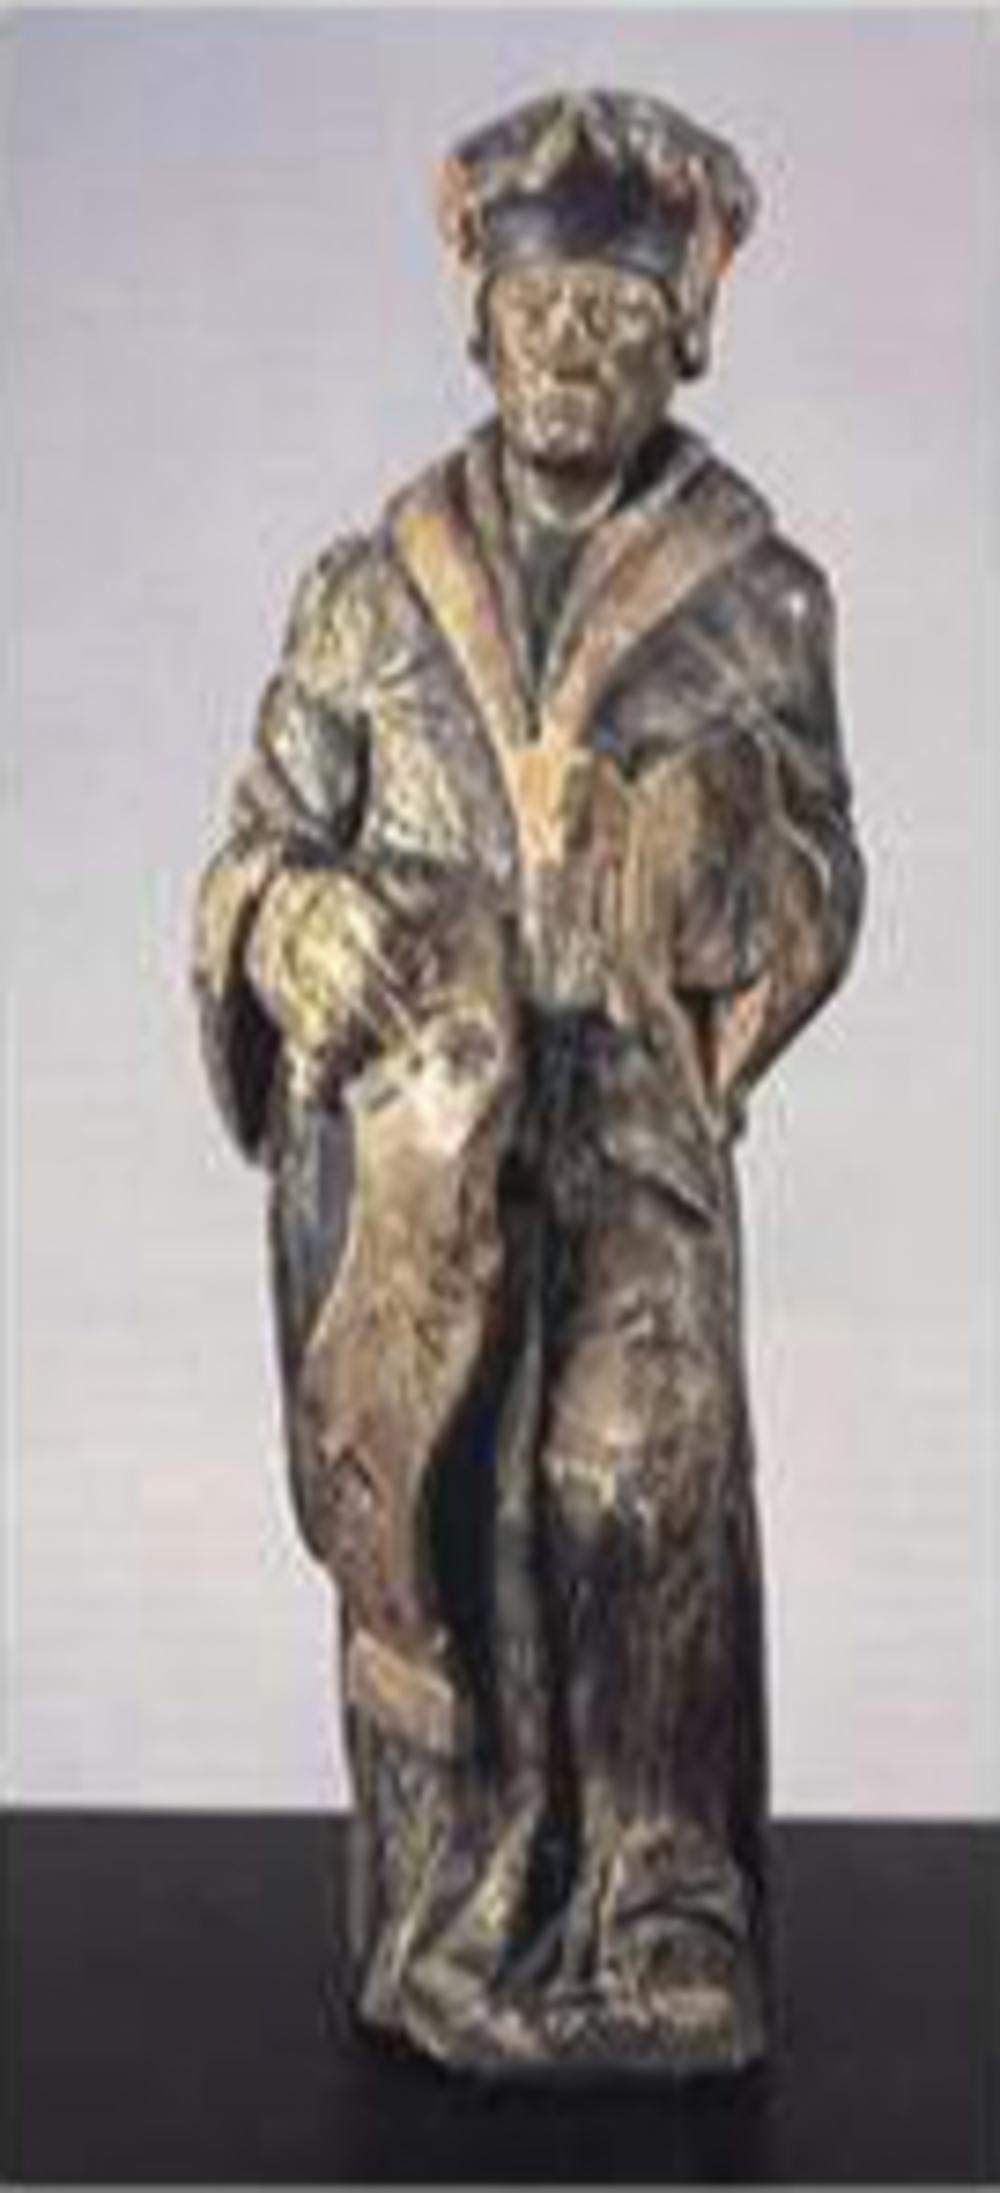 Erasmus, het houten hekbeeld van De Liefde, voorheen de Erasmus. (Tokio National Museum)